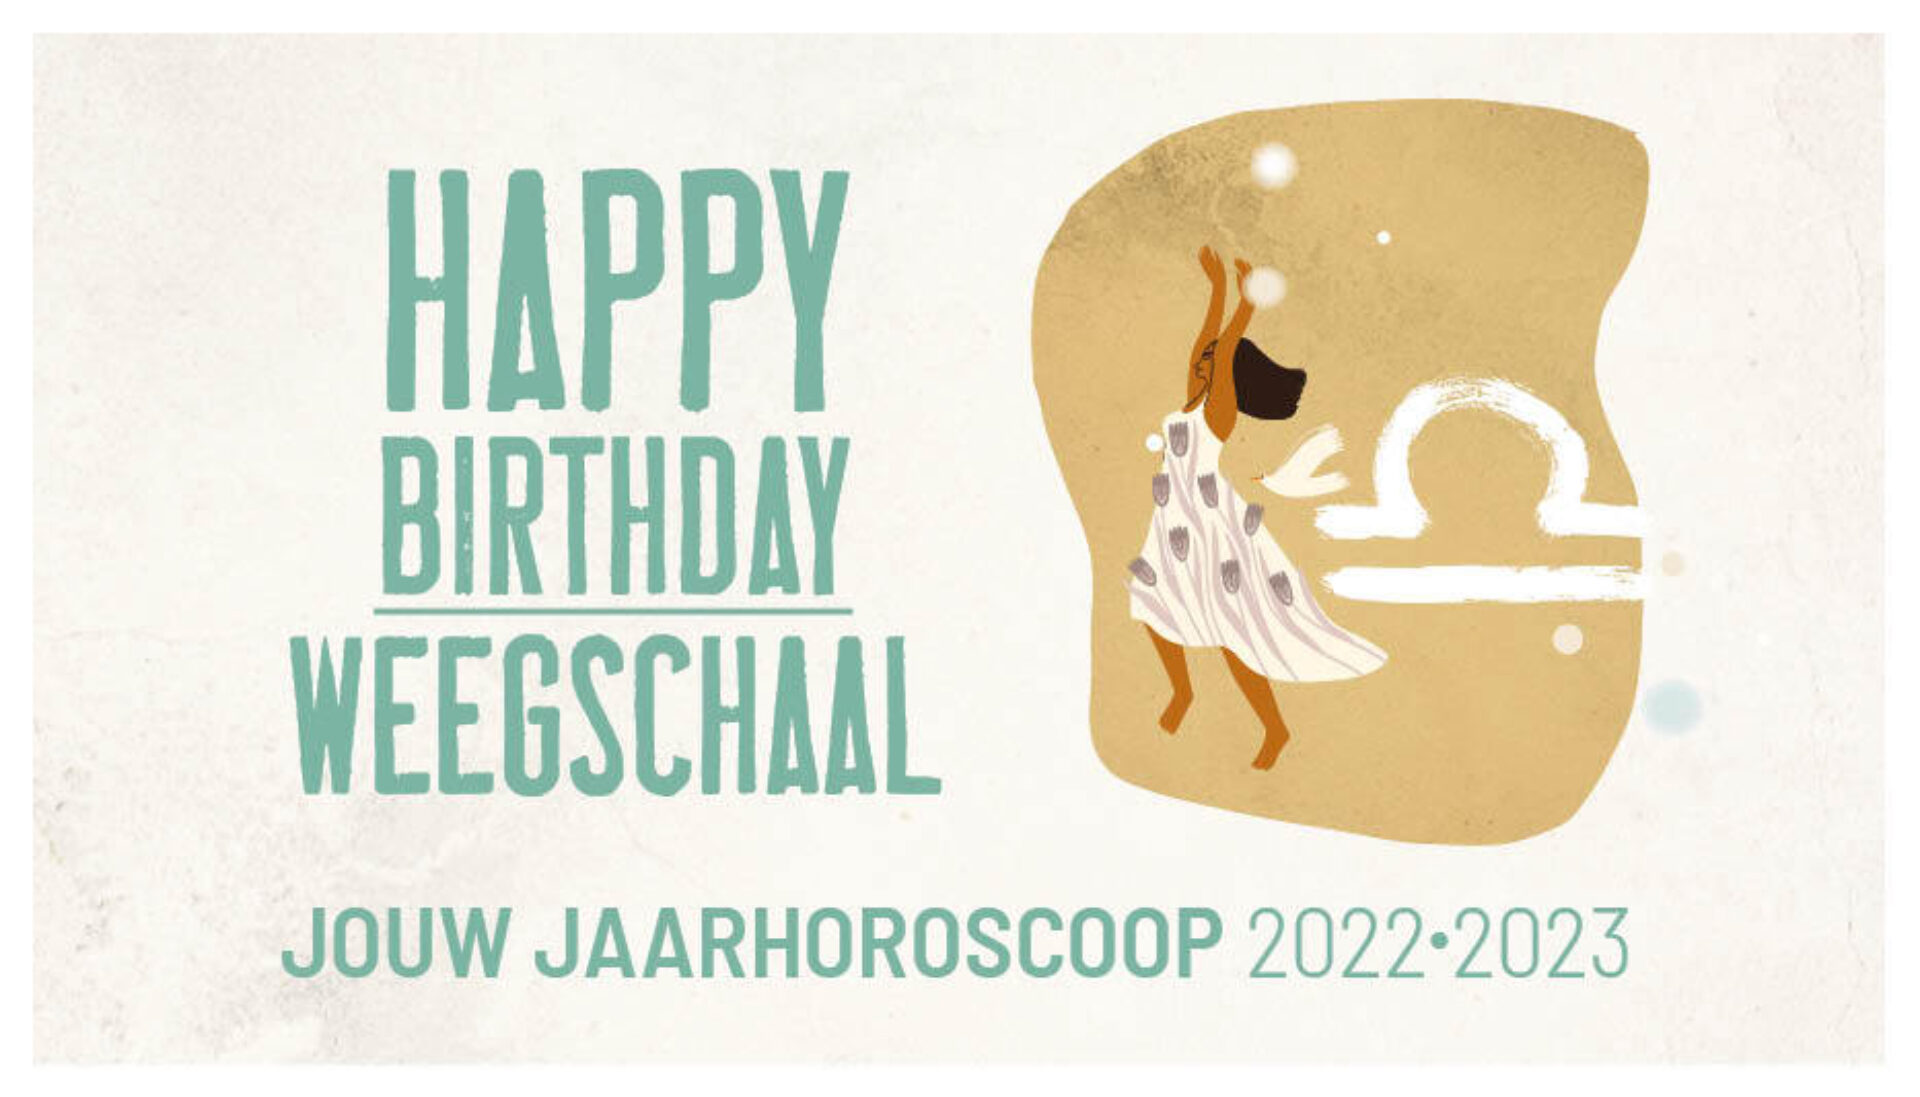 Jaarhoroscoop Weegschaal 2022-2023: gelukkige verjaardag!